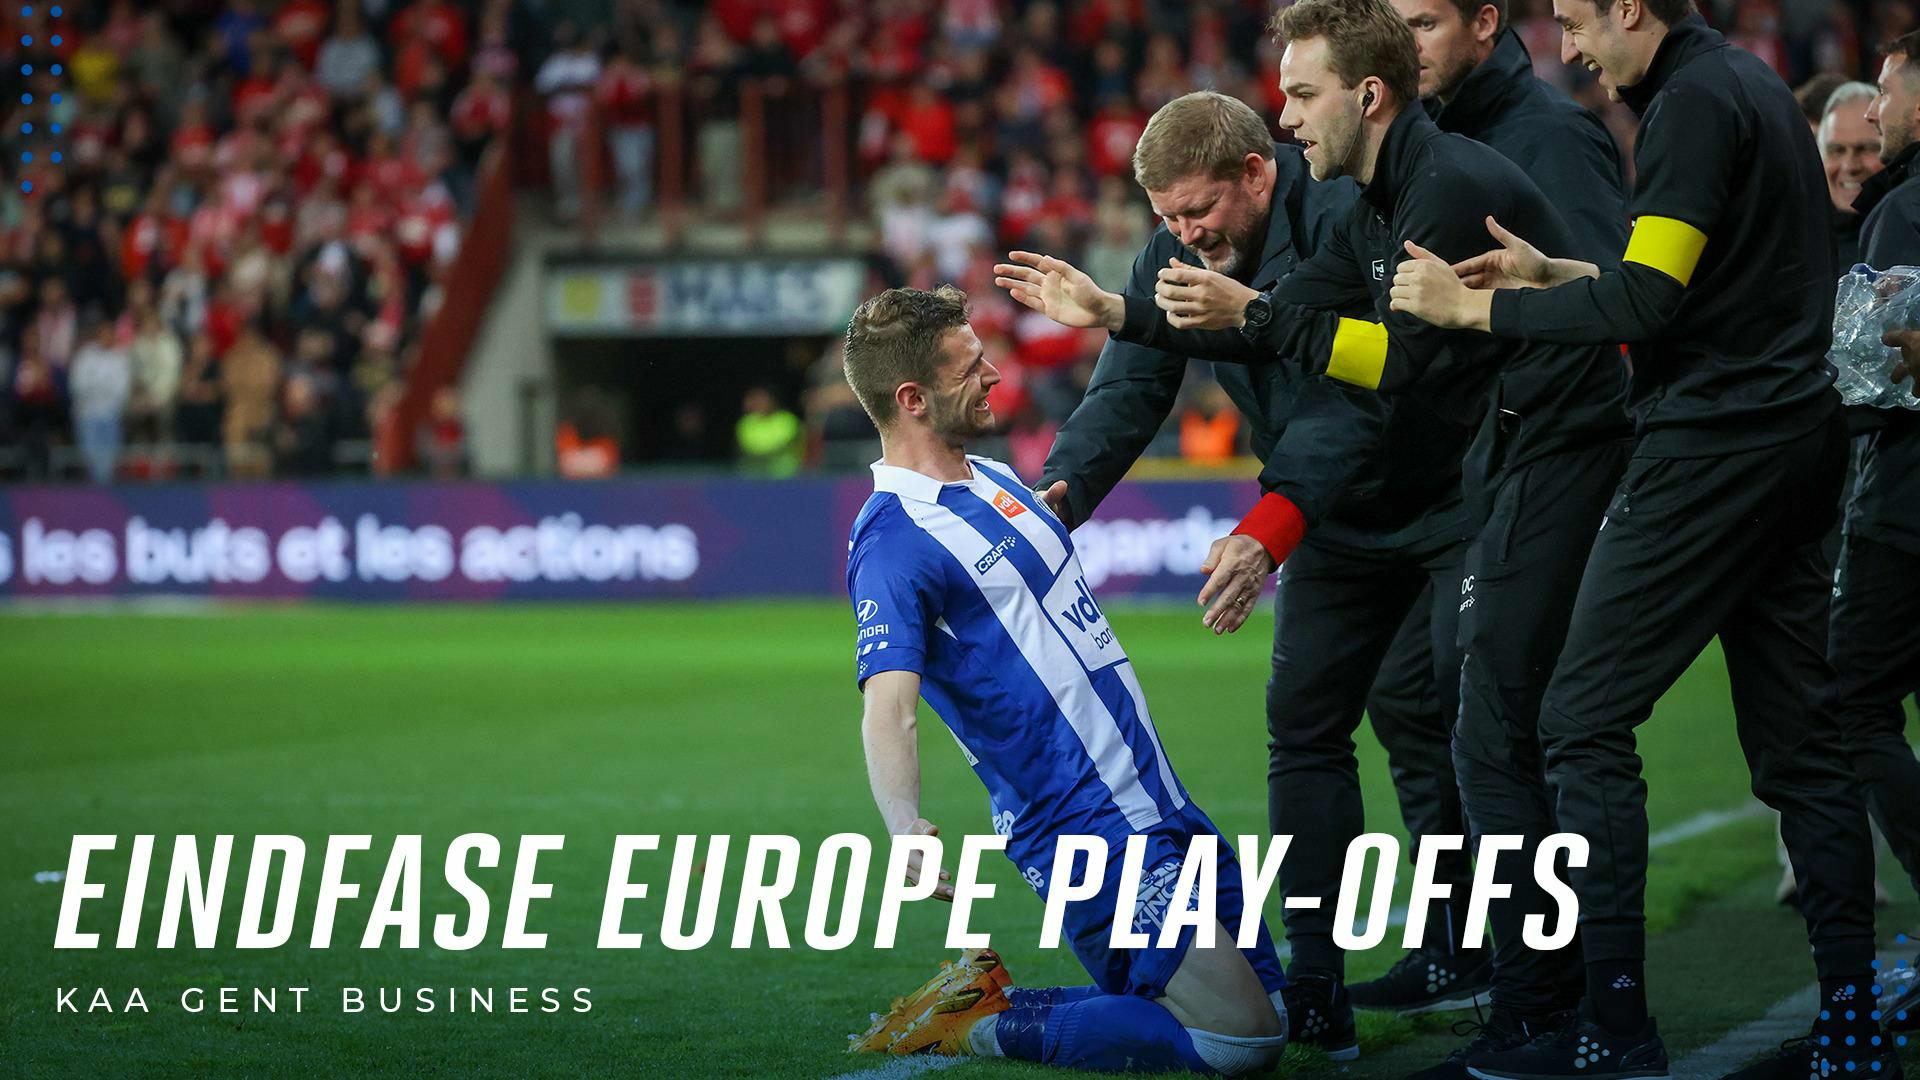 Business: Eindfase in de Europe Play-Offs